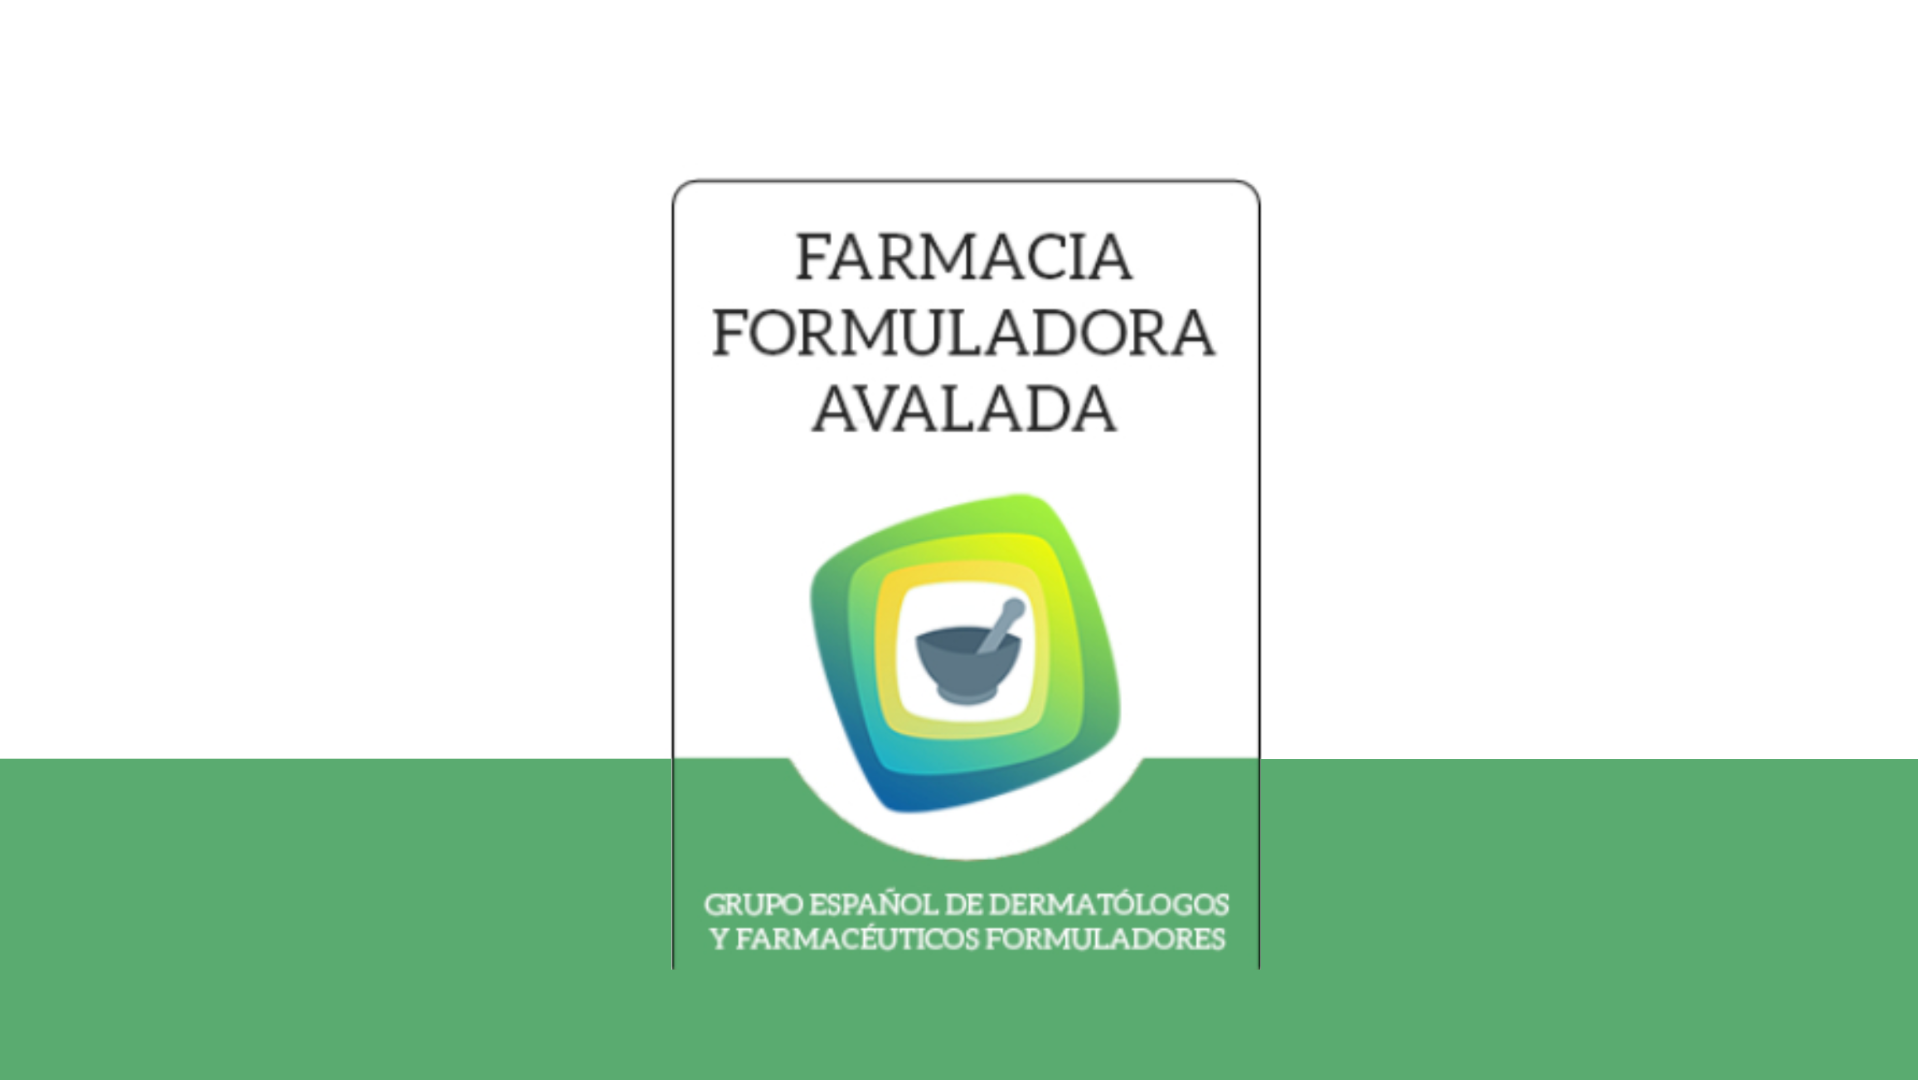 Farmacia Formuladora Avalada por el Grupo Español de Dermatólogos y Farmacéuticos Formuladores